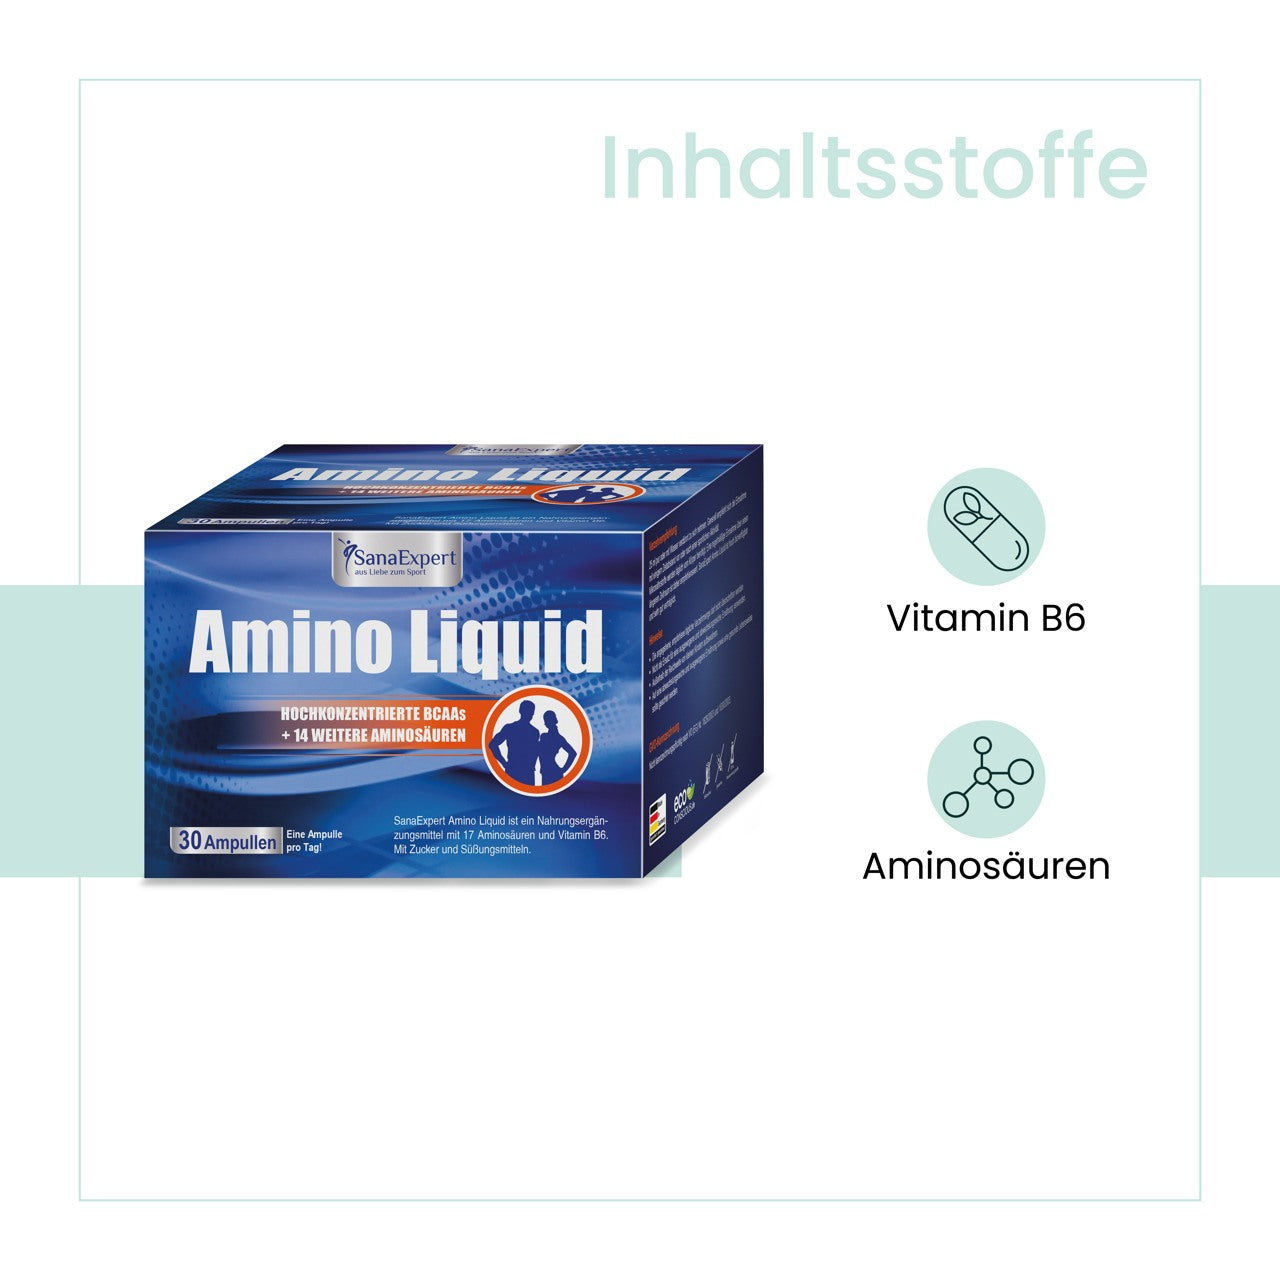 Packung von Amino Liquid mit Aufschrift der Inhaltsstoffe Vitamin B6 und Aminosäuren, auf pastellfarbenem Hintergrund.